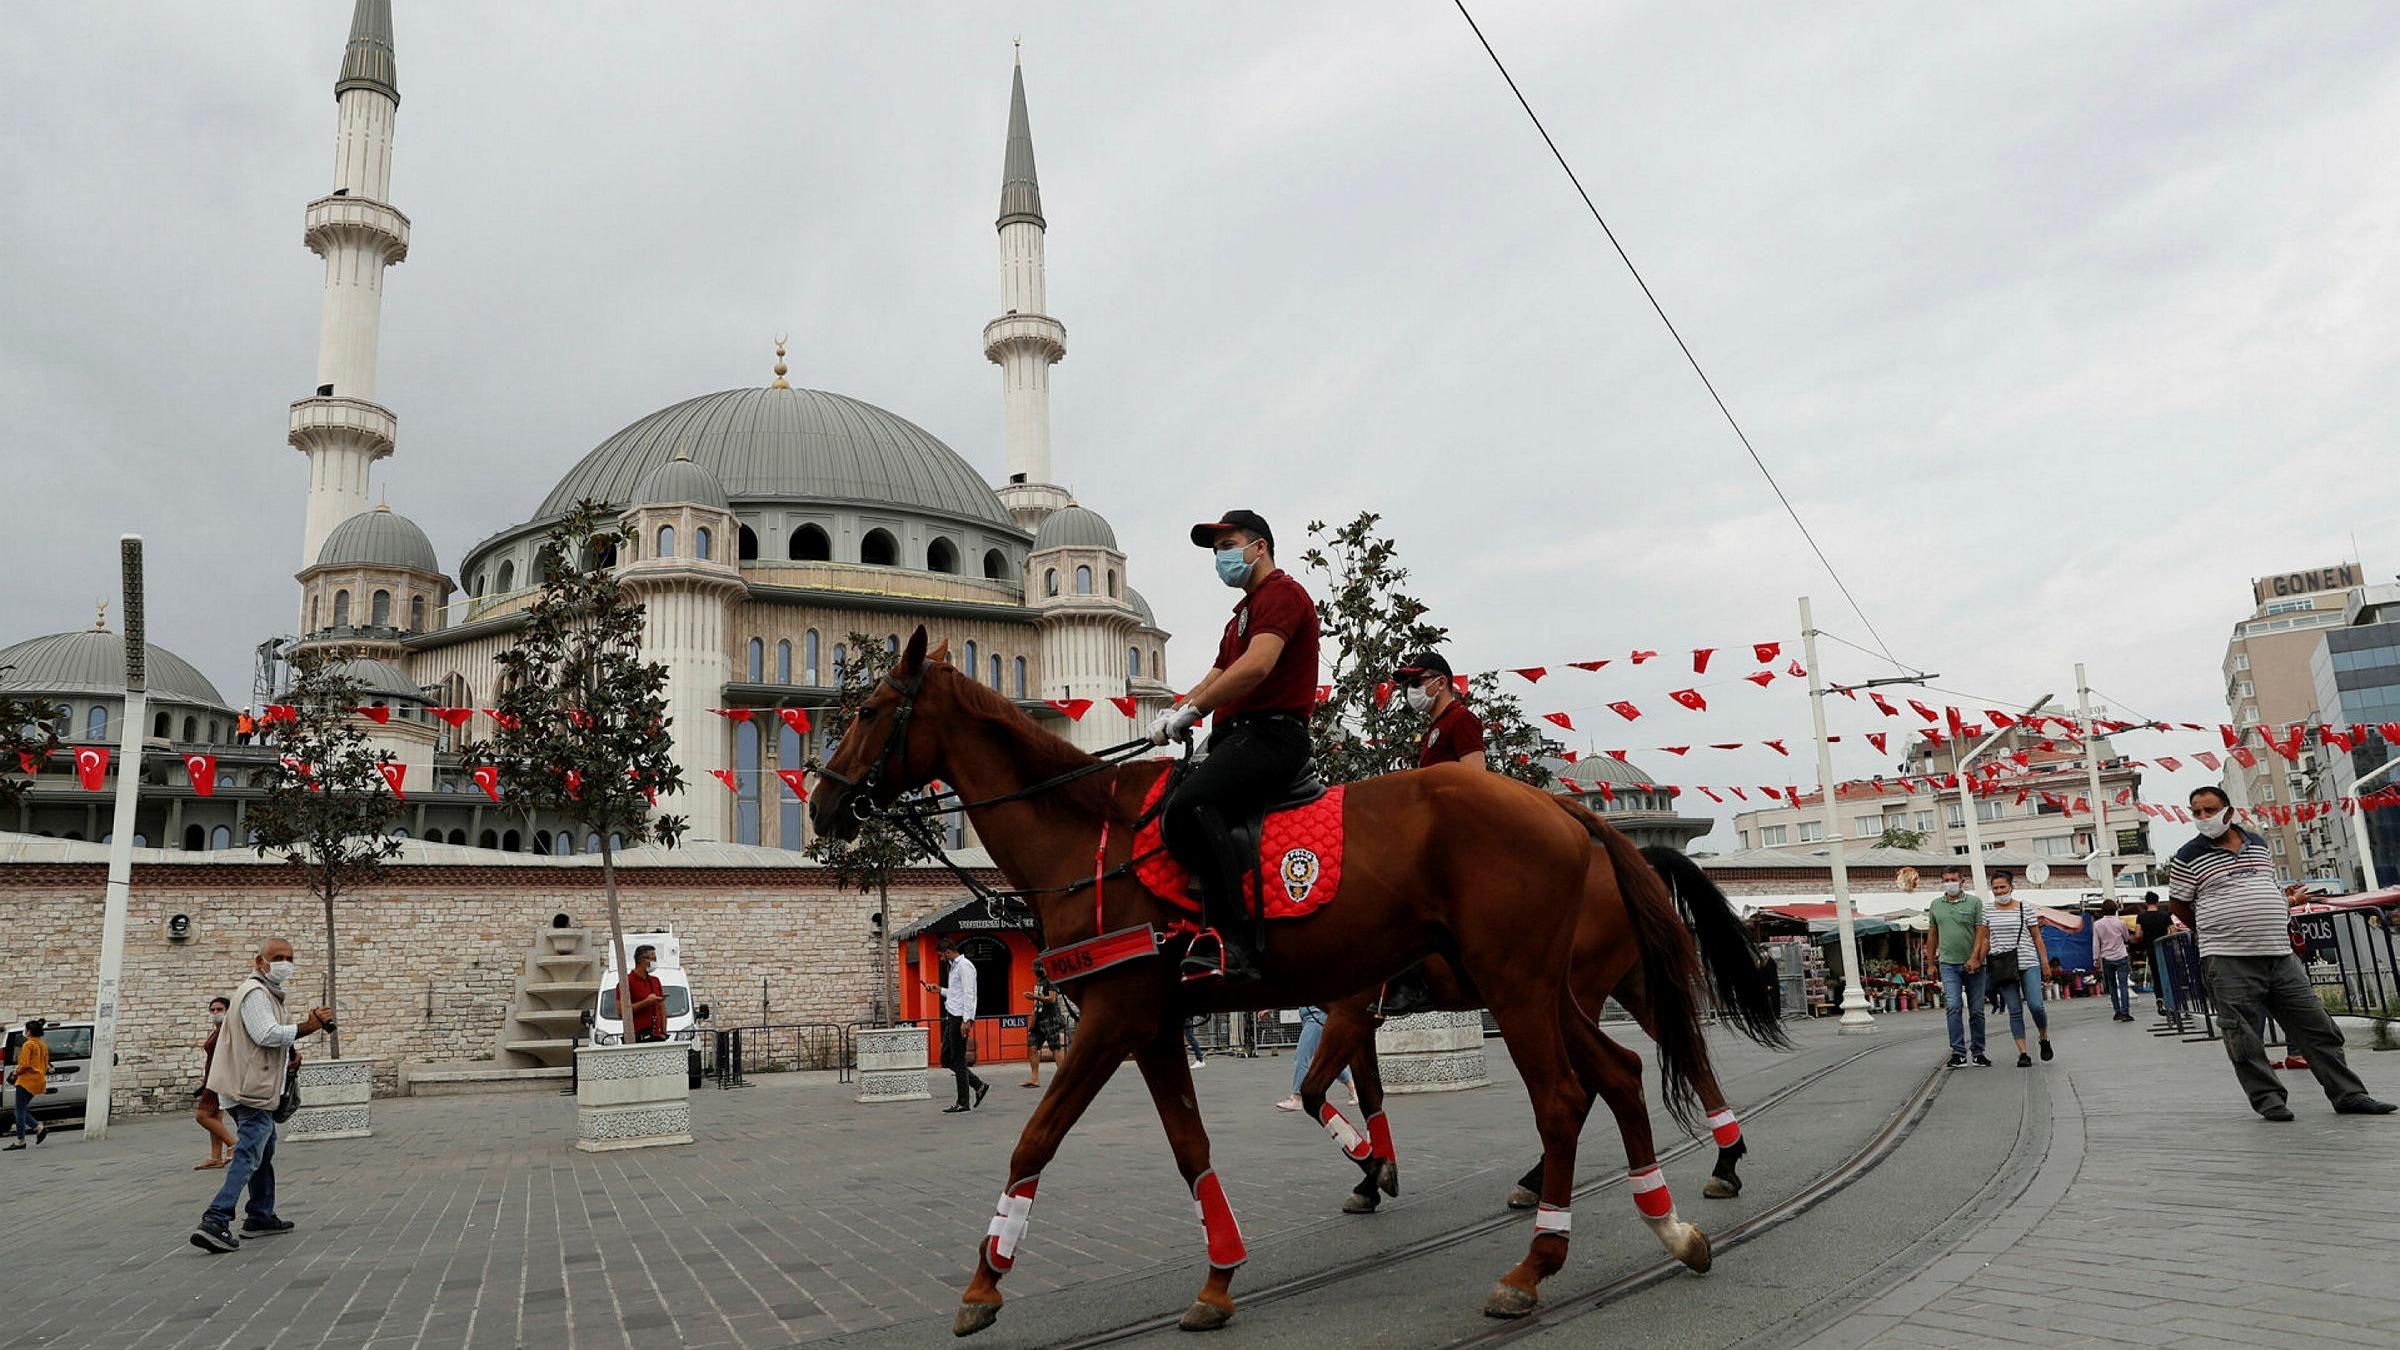 Турция ослабляет карантин: какие ограничения остаются